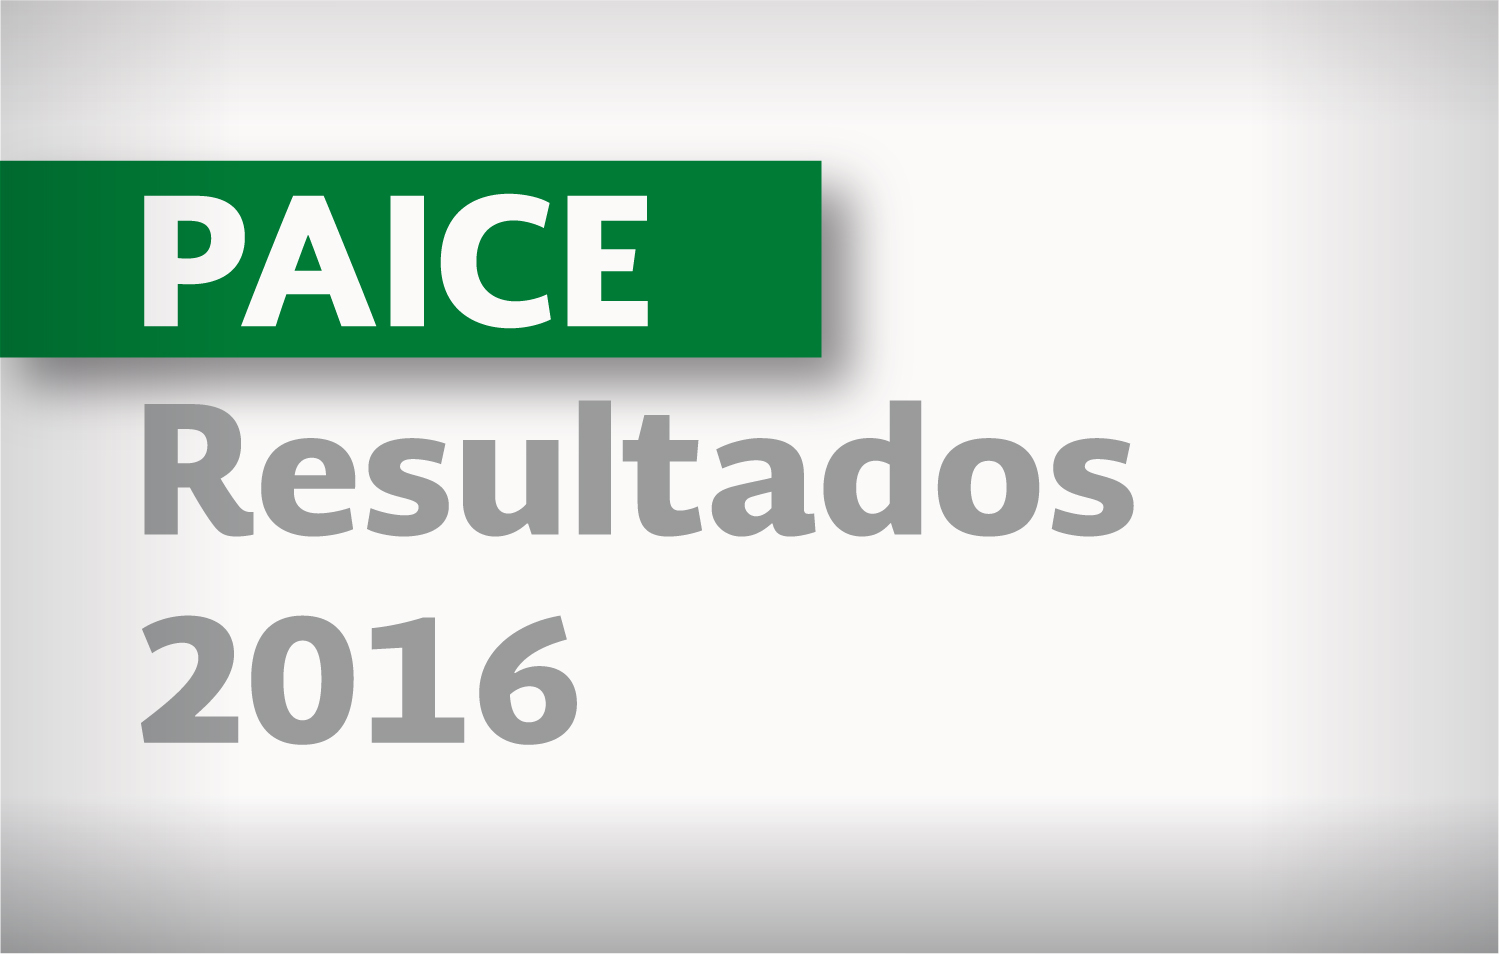 PAICE Resultados 2016